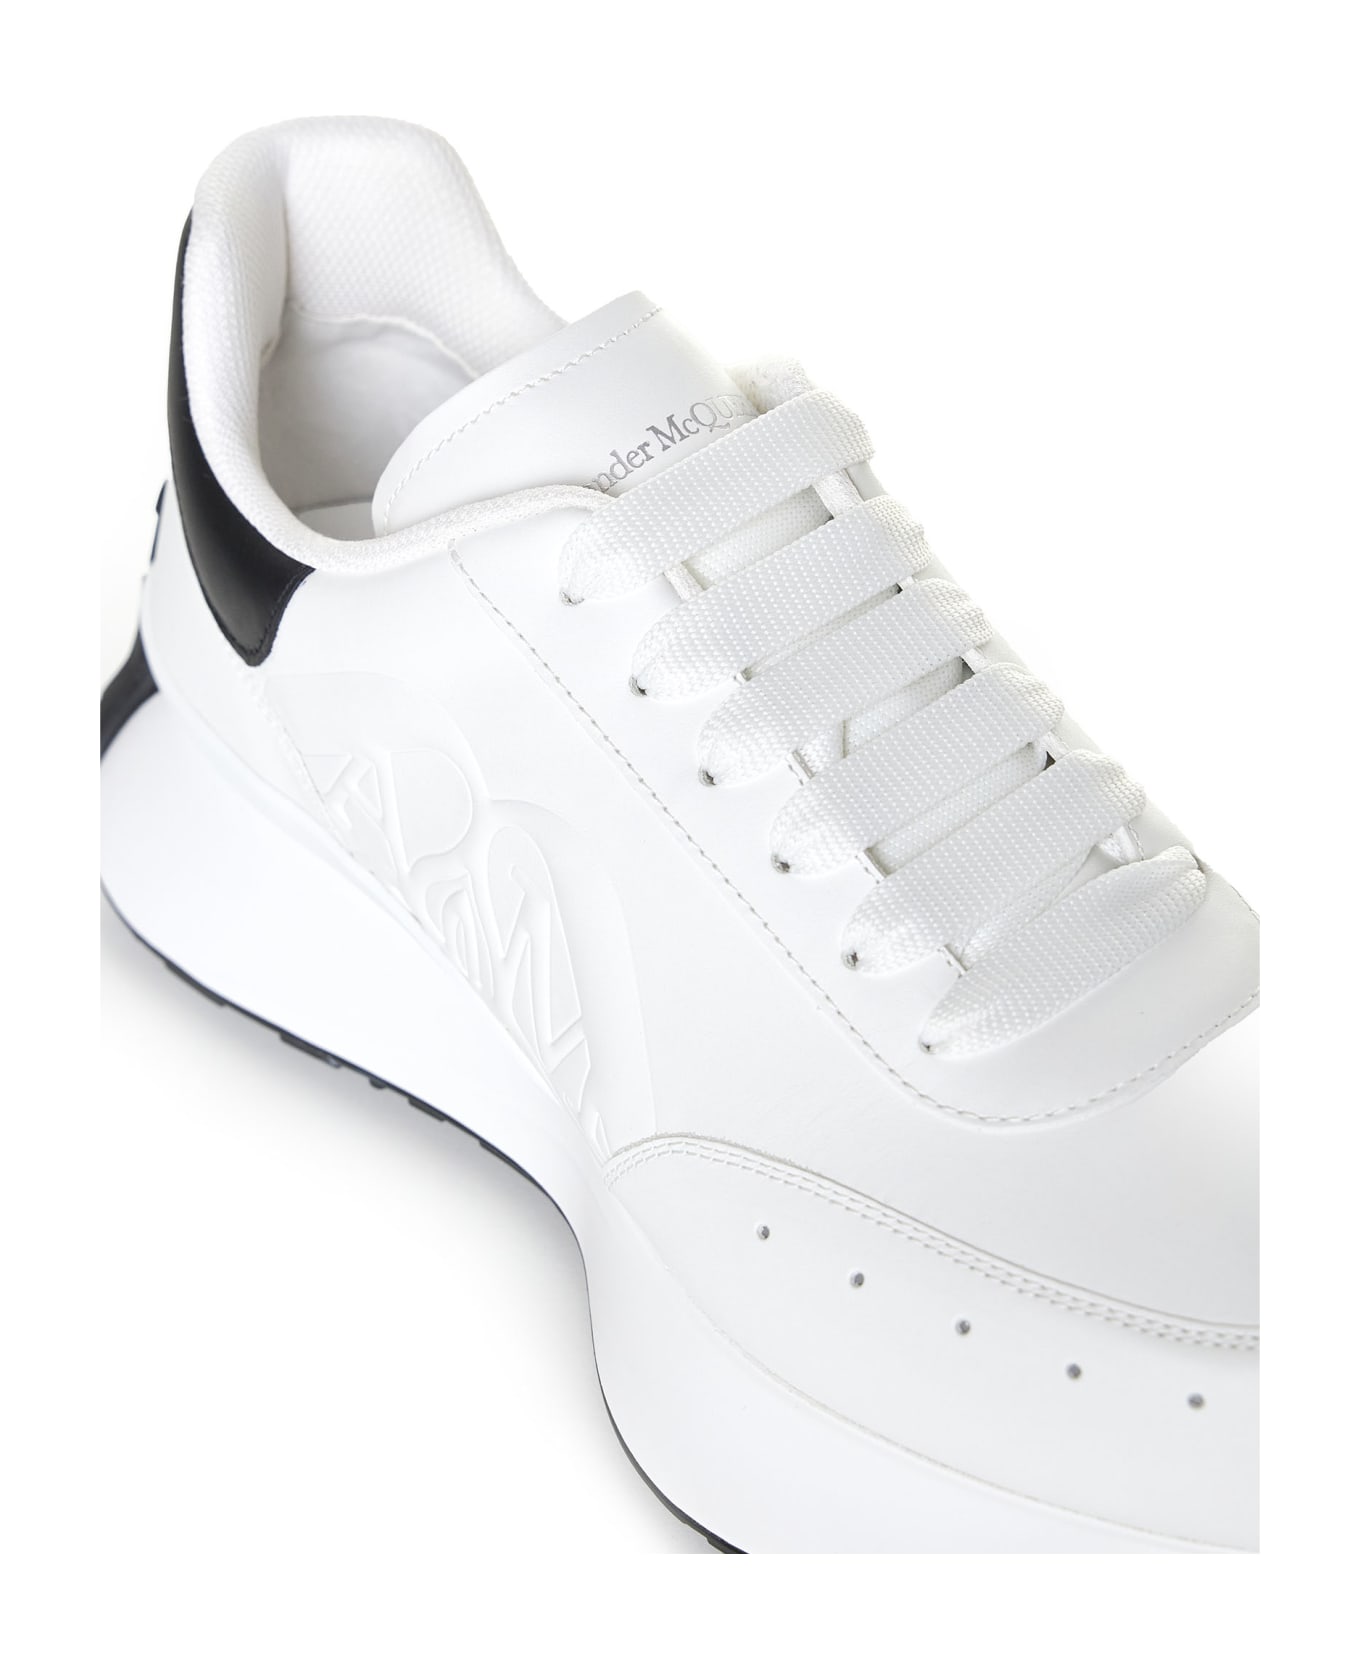 Alexander McQueen Sprint Runner Sneakers - White/black